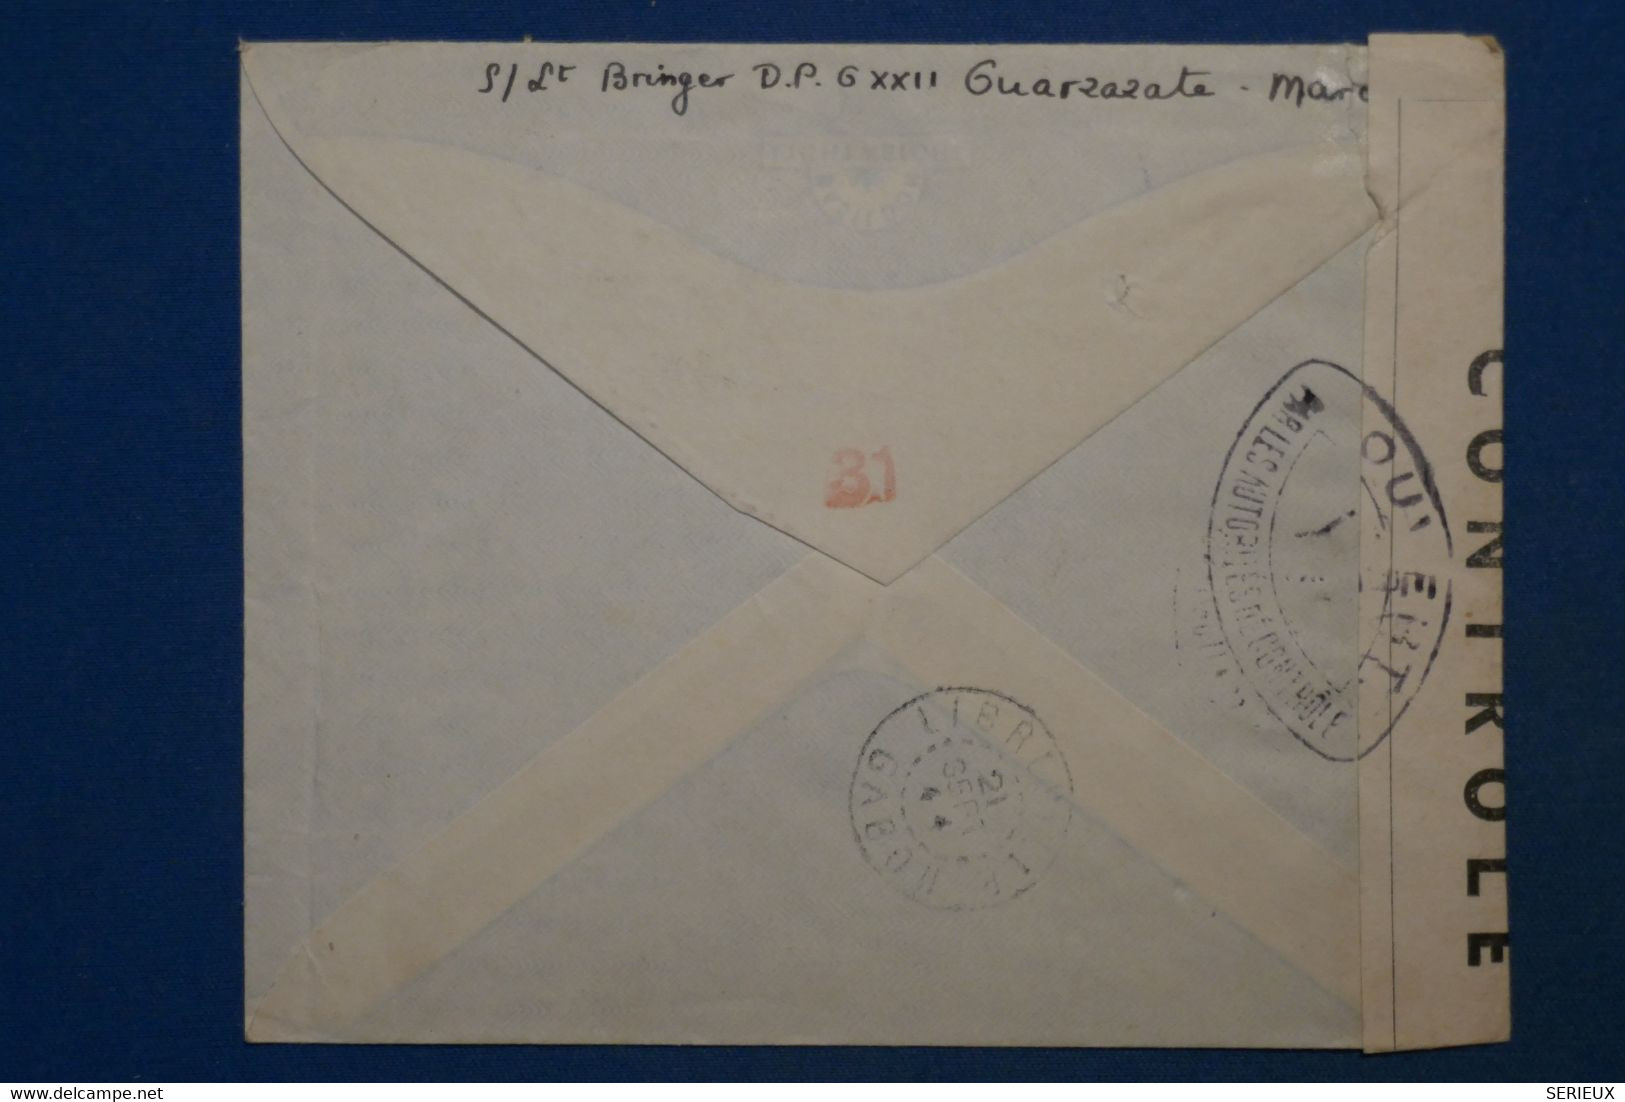 AK6 MAROC  BELLE LETTRE  CENSUREE   1944 MARRAKESH POUR   LIBREVILLE GABON  ++AEROPHILATELIE++AFFR. INTERESSA NT - Lettres & Documents